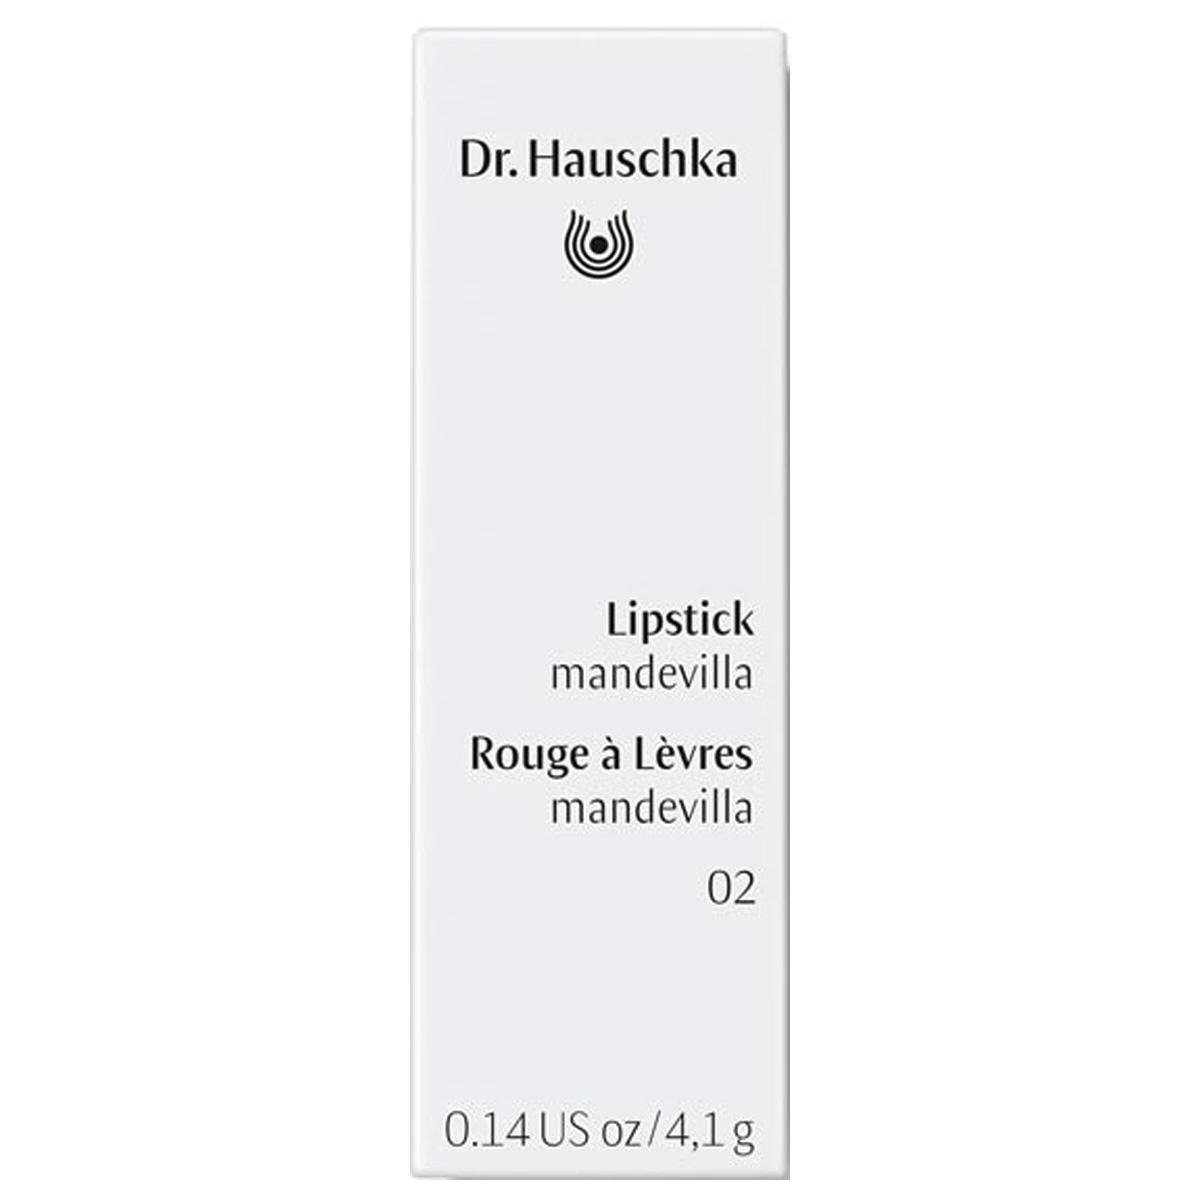 Dr. Hauschka Lipstick 02 mandevilla, Inhalt 4,1 g - 2